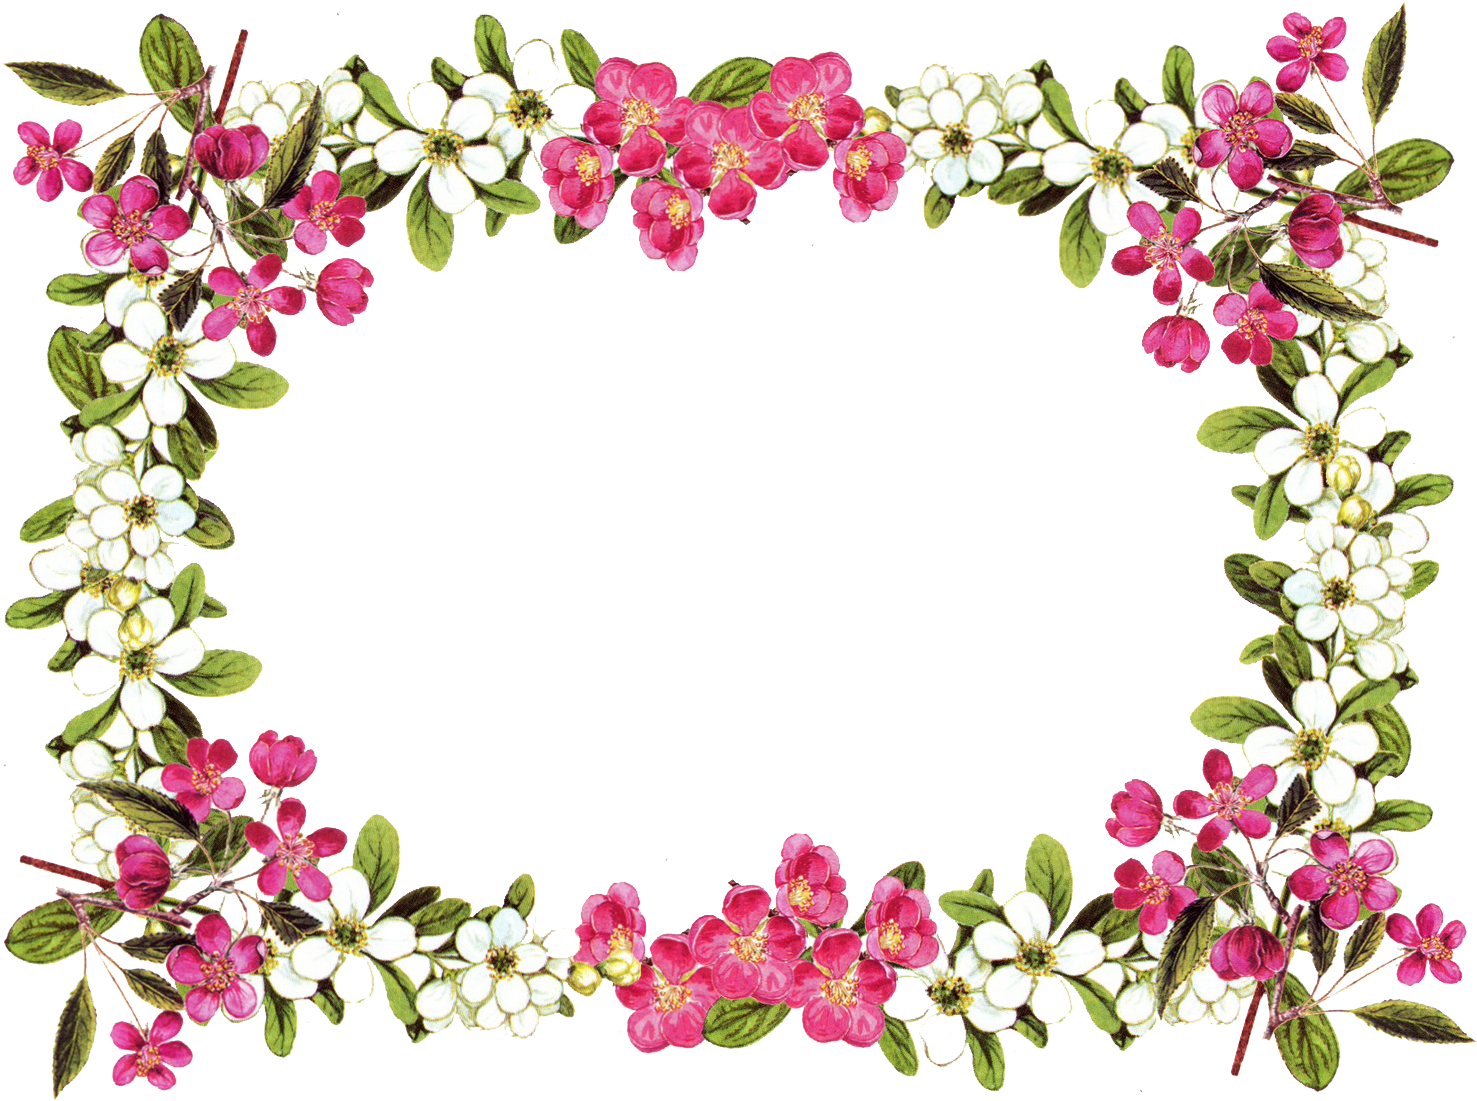 Floral Frame Border Design PNG image